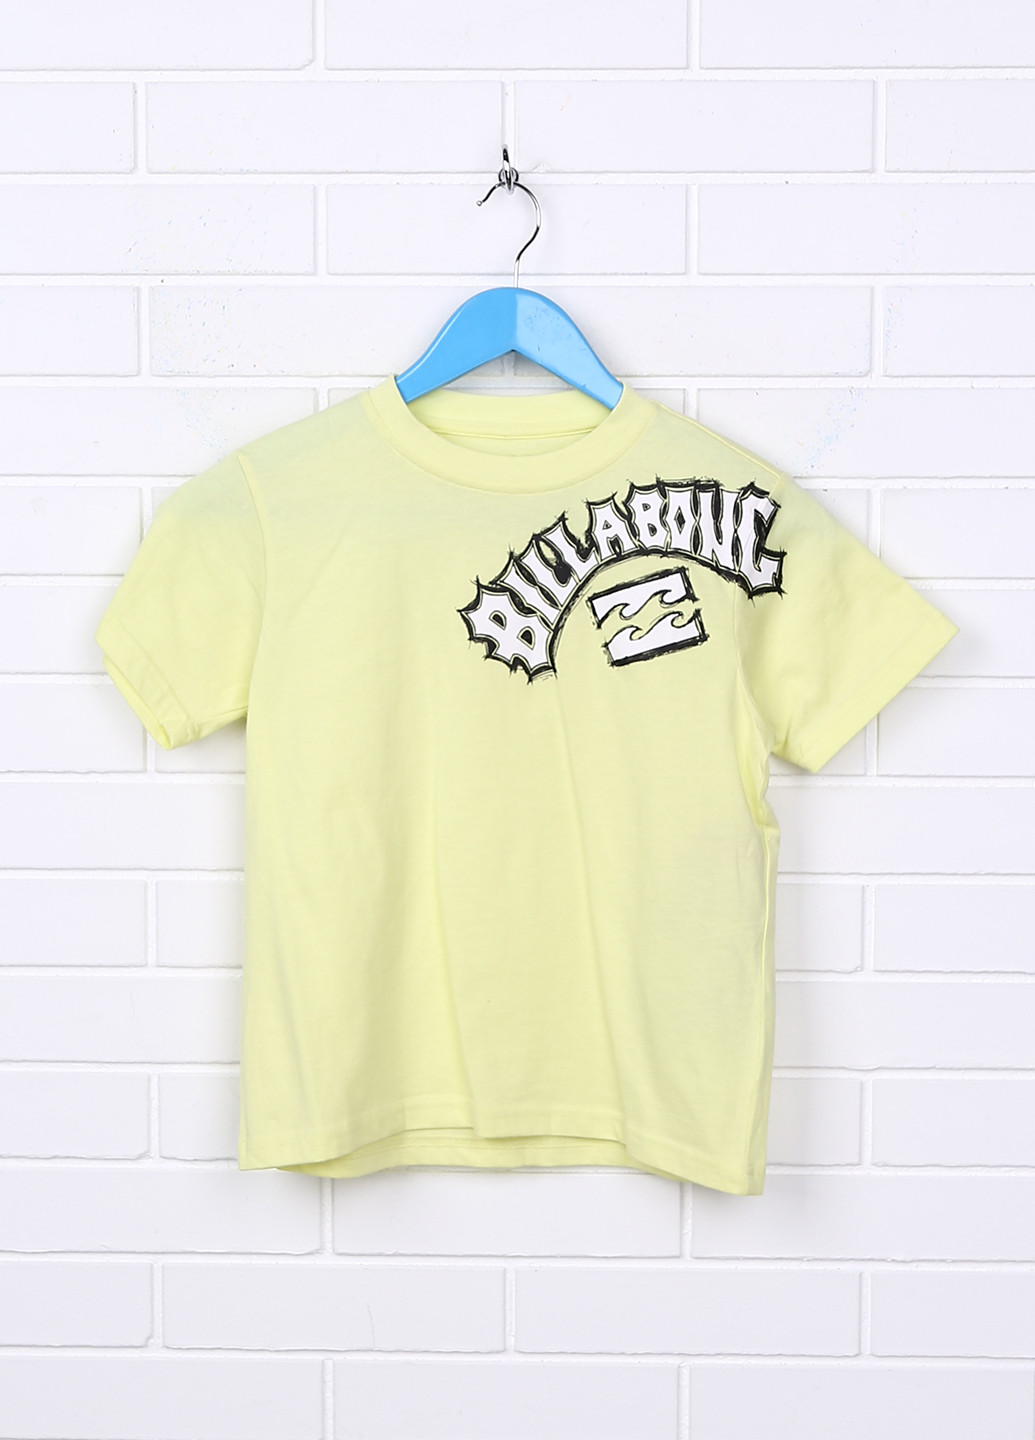 Желтая летняя футболка с коротким рукавом Billabong